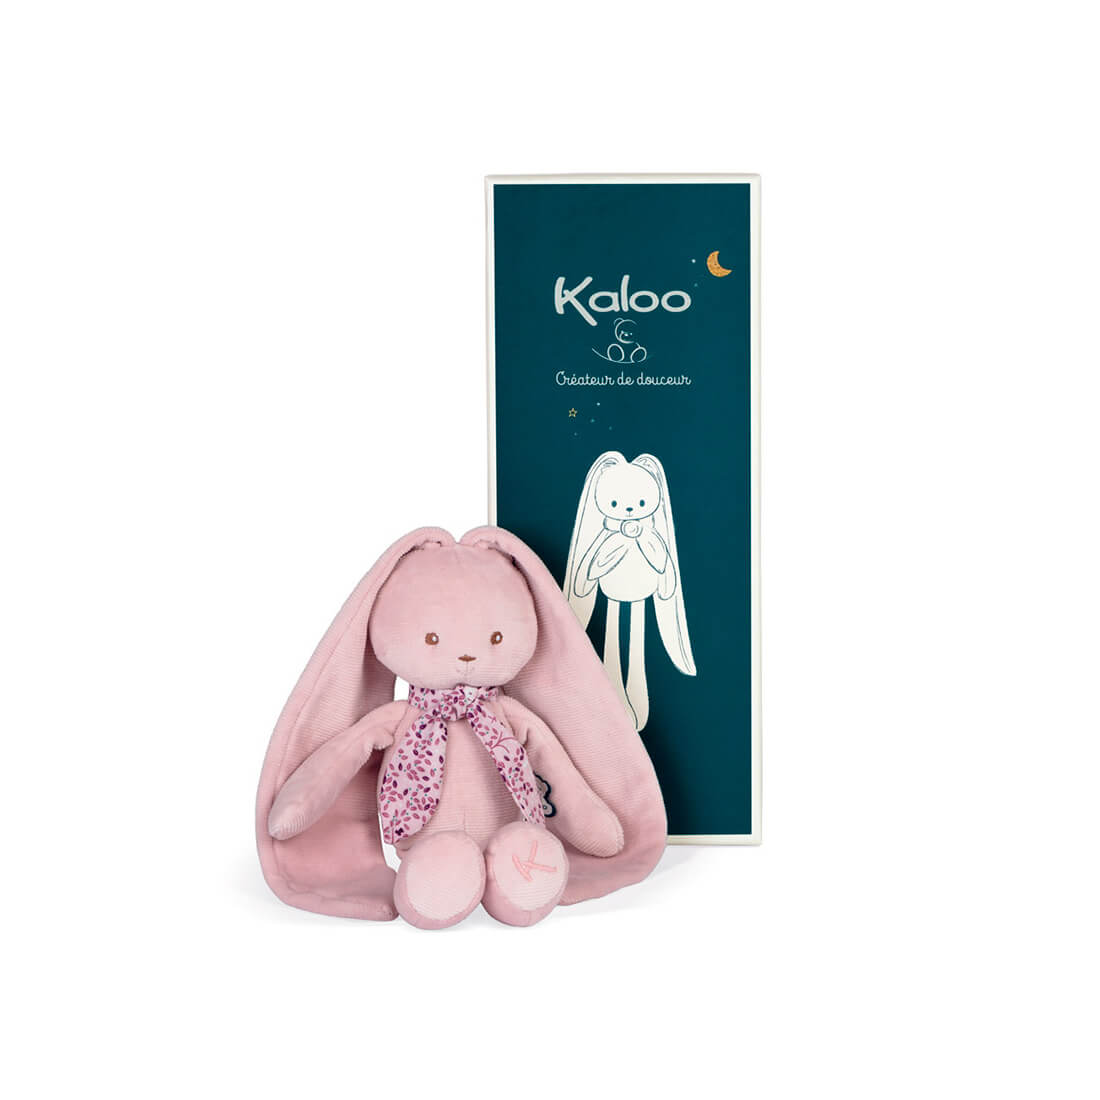 Мягкая игрушка Kaloo "Кролик", серия "Lapinoo", розовый, средний, 35 см